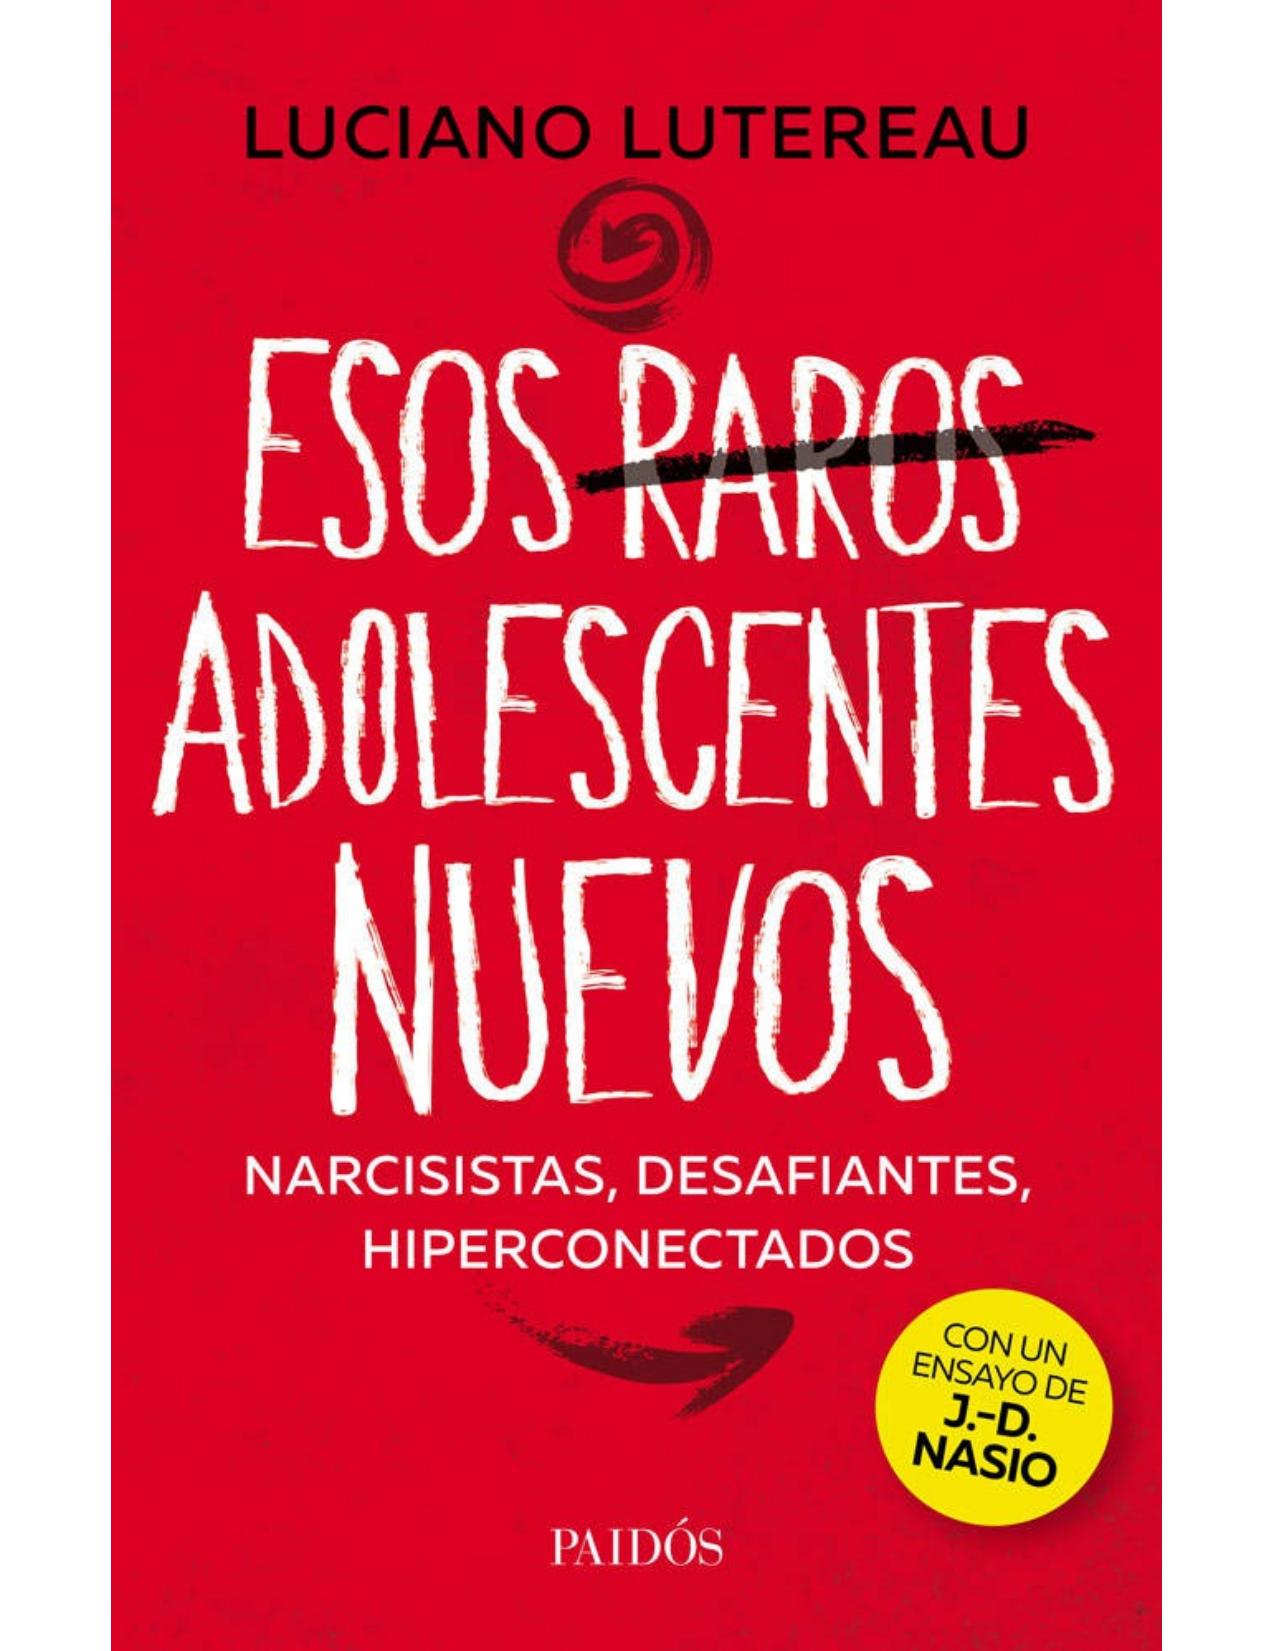 Esos raros adolescentes nuevos (Spanish Edition)